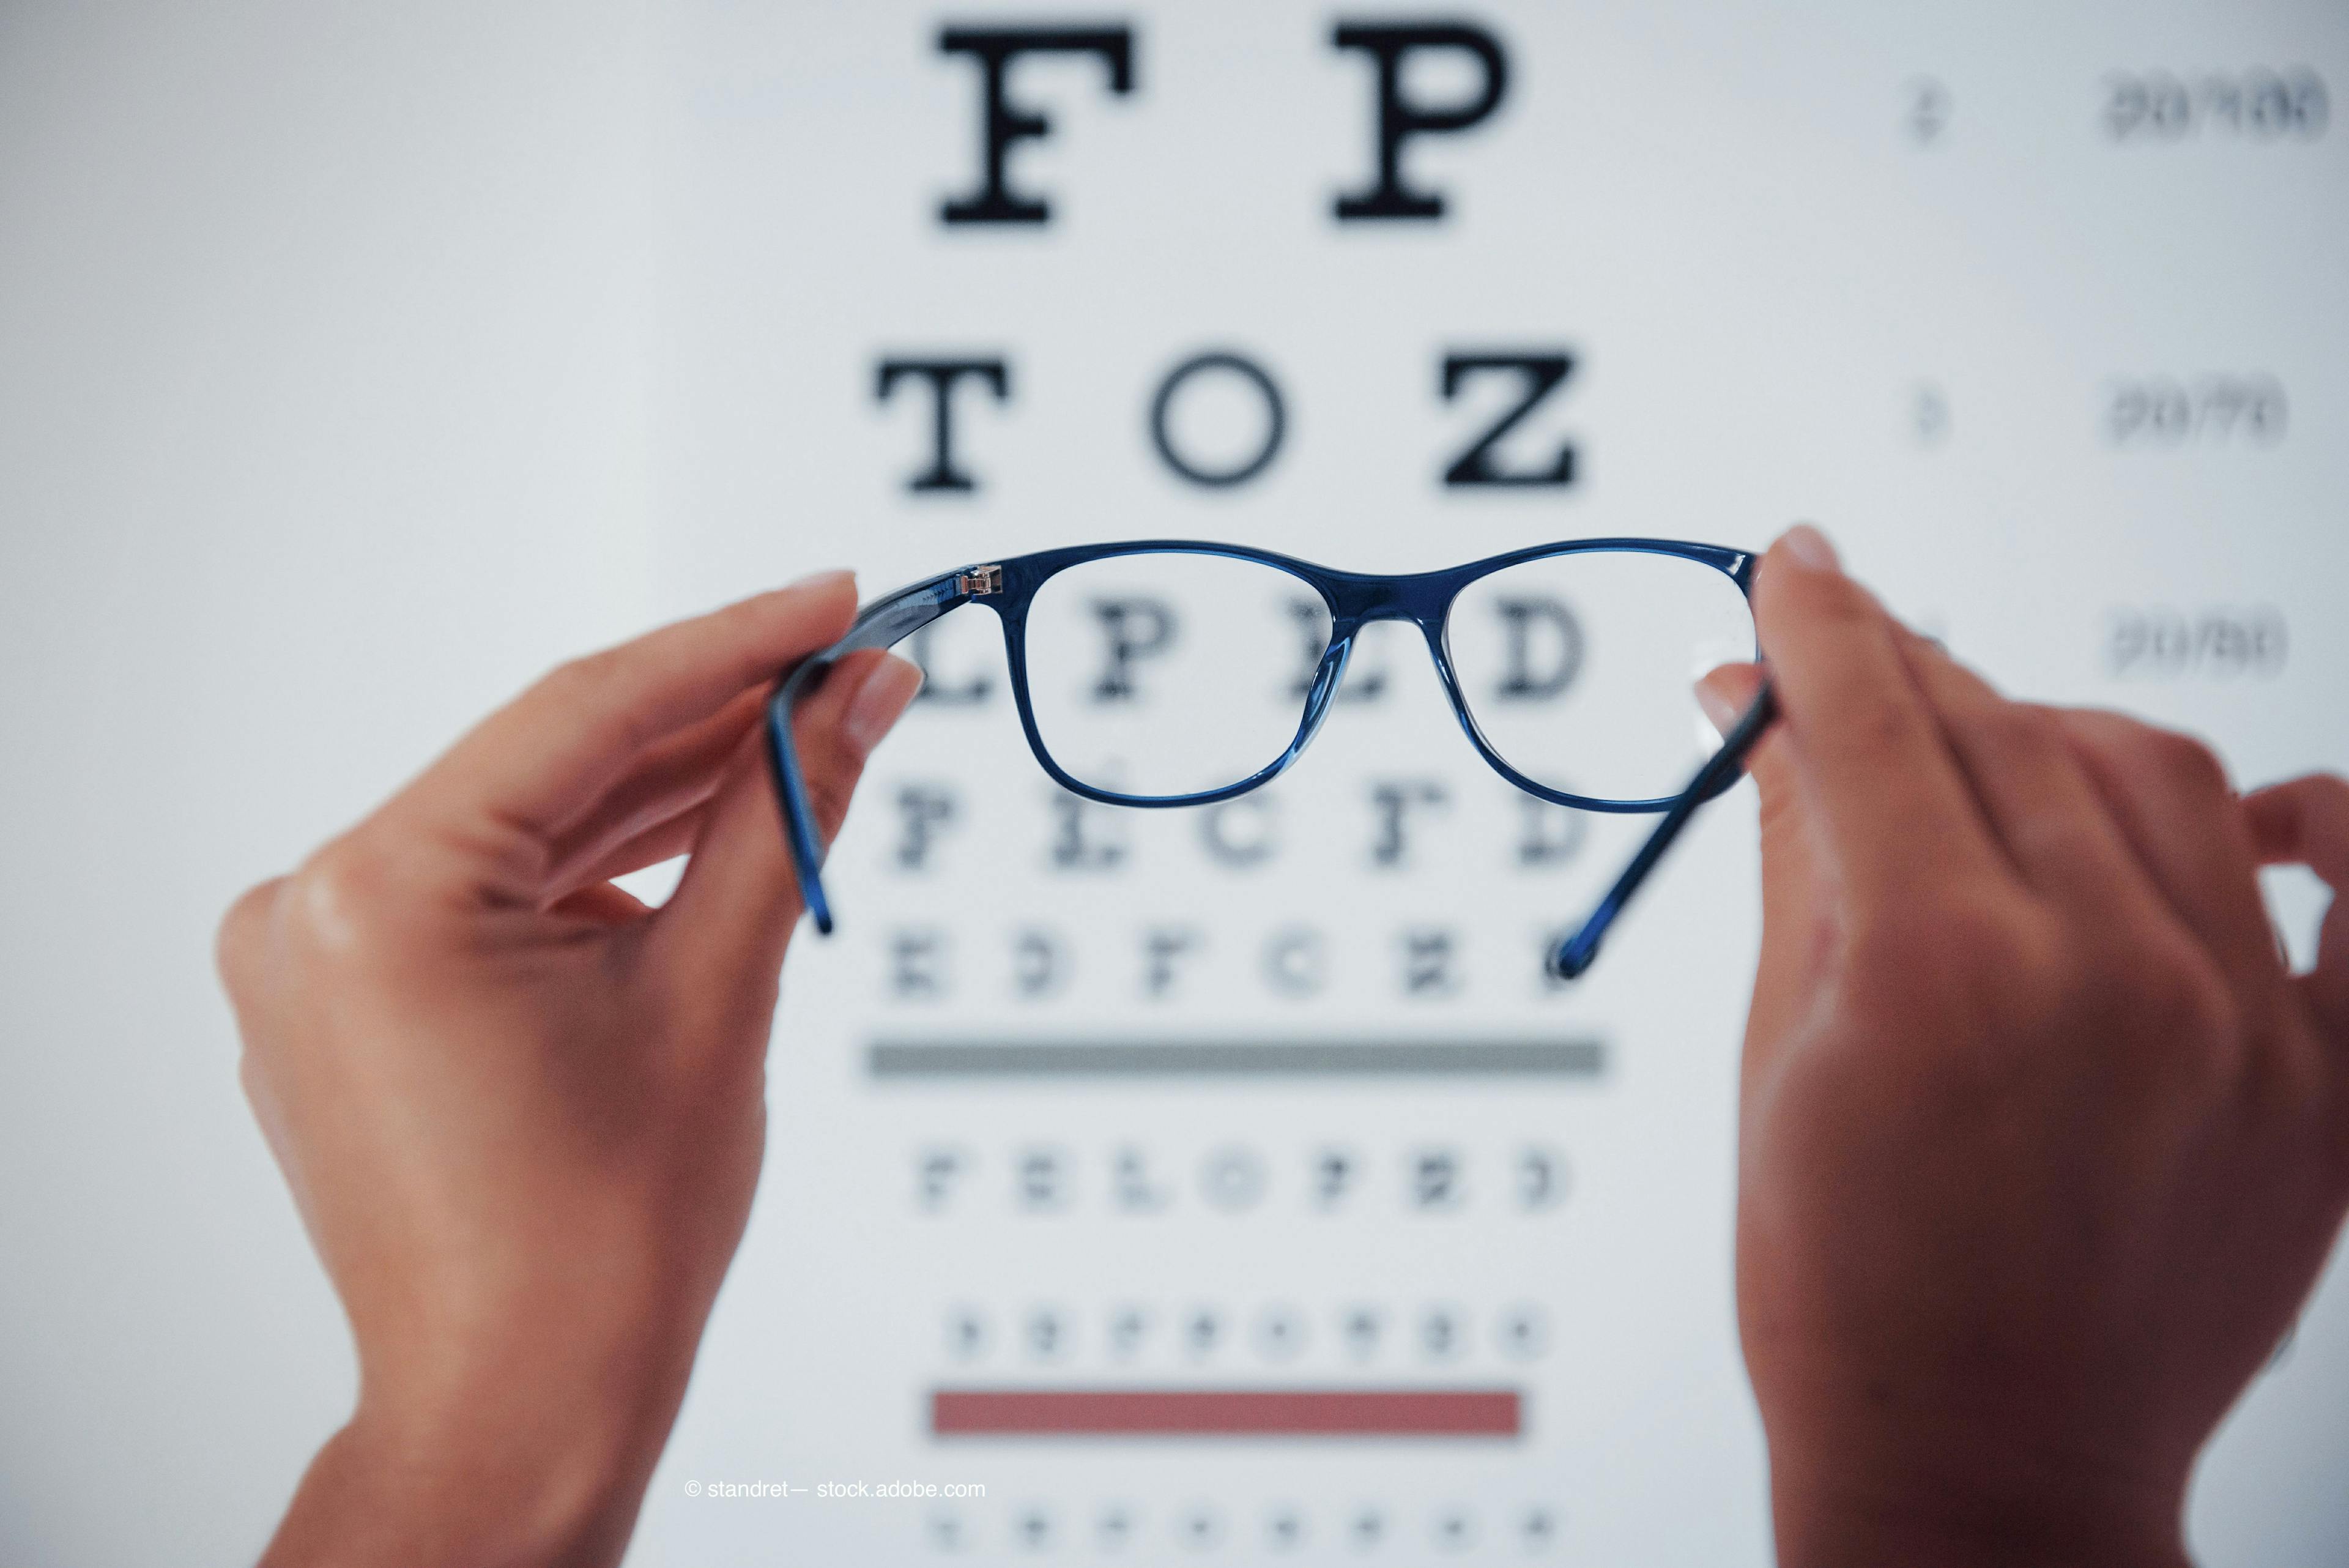 Welcoming myopia modalities into optometric practice